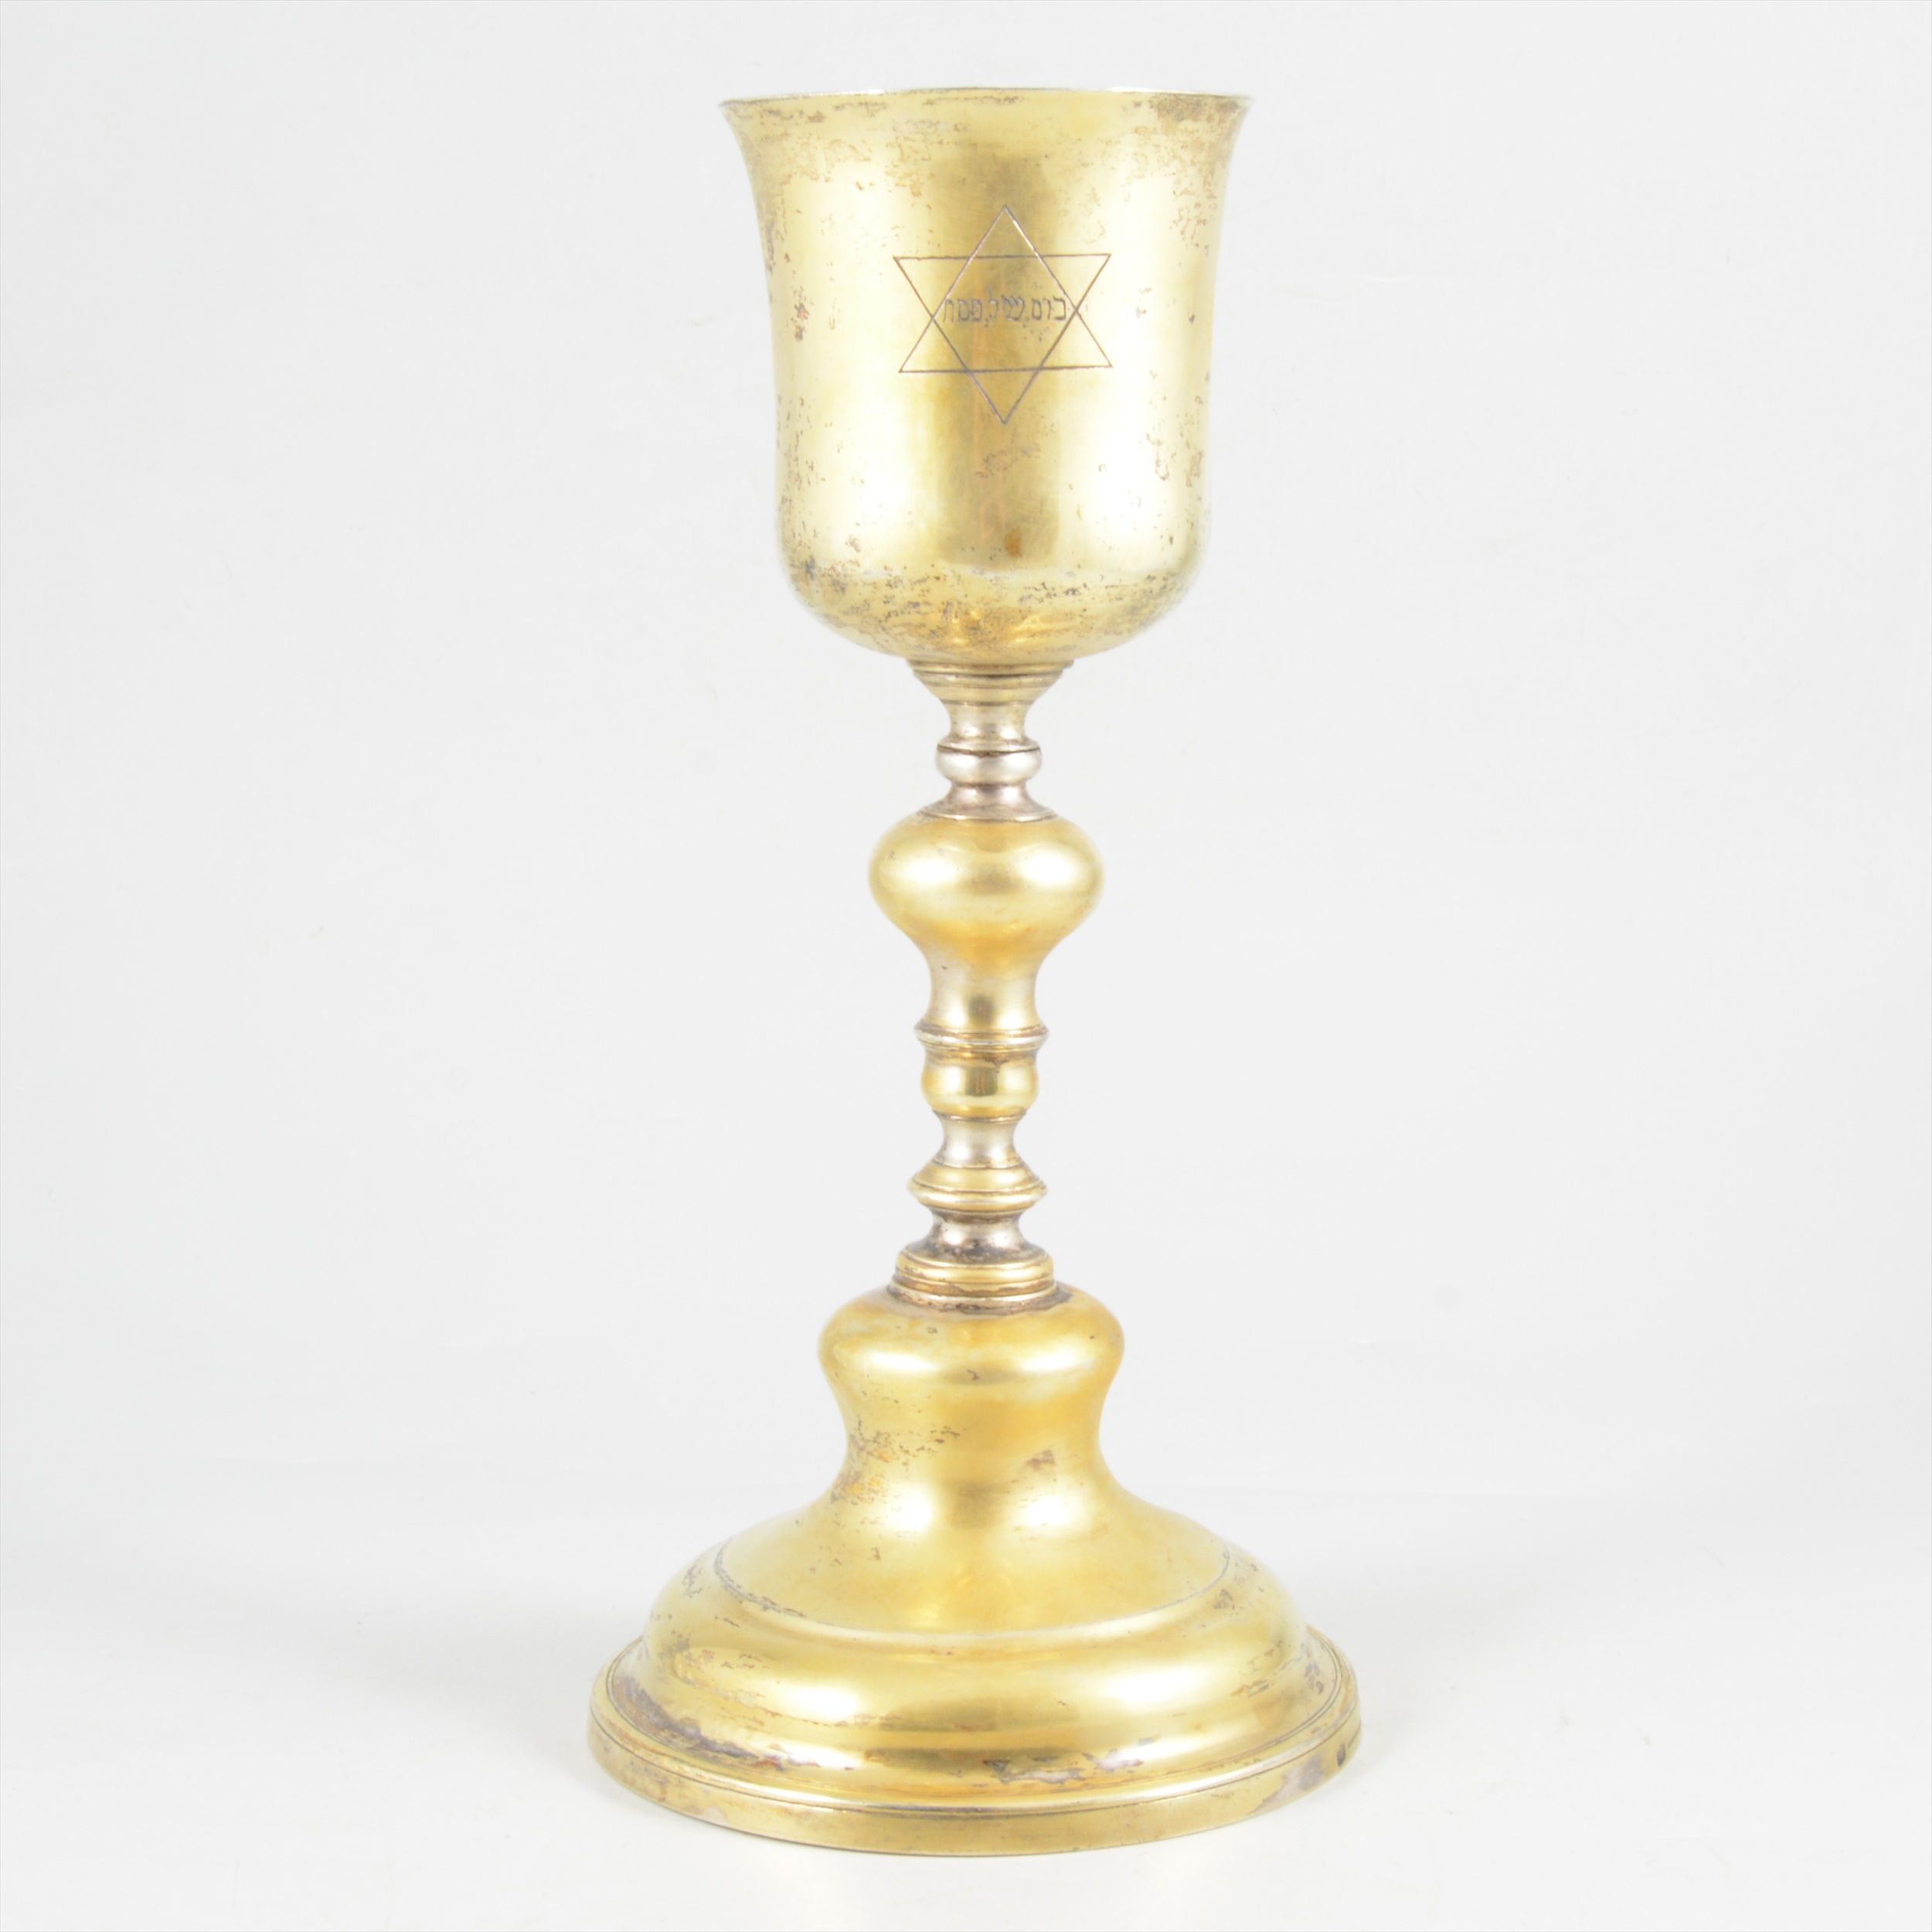 Portuguese silver gilt chalice, Porto, 1843-50